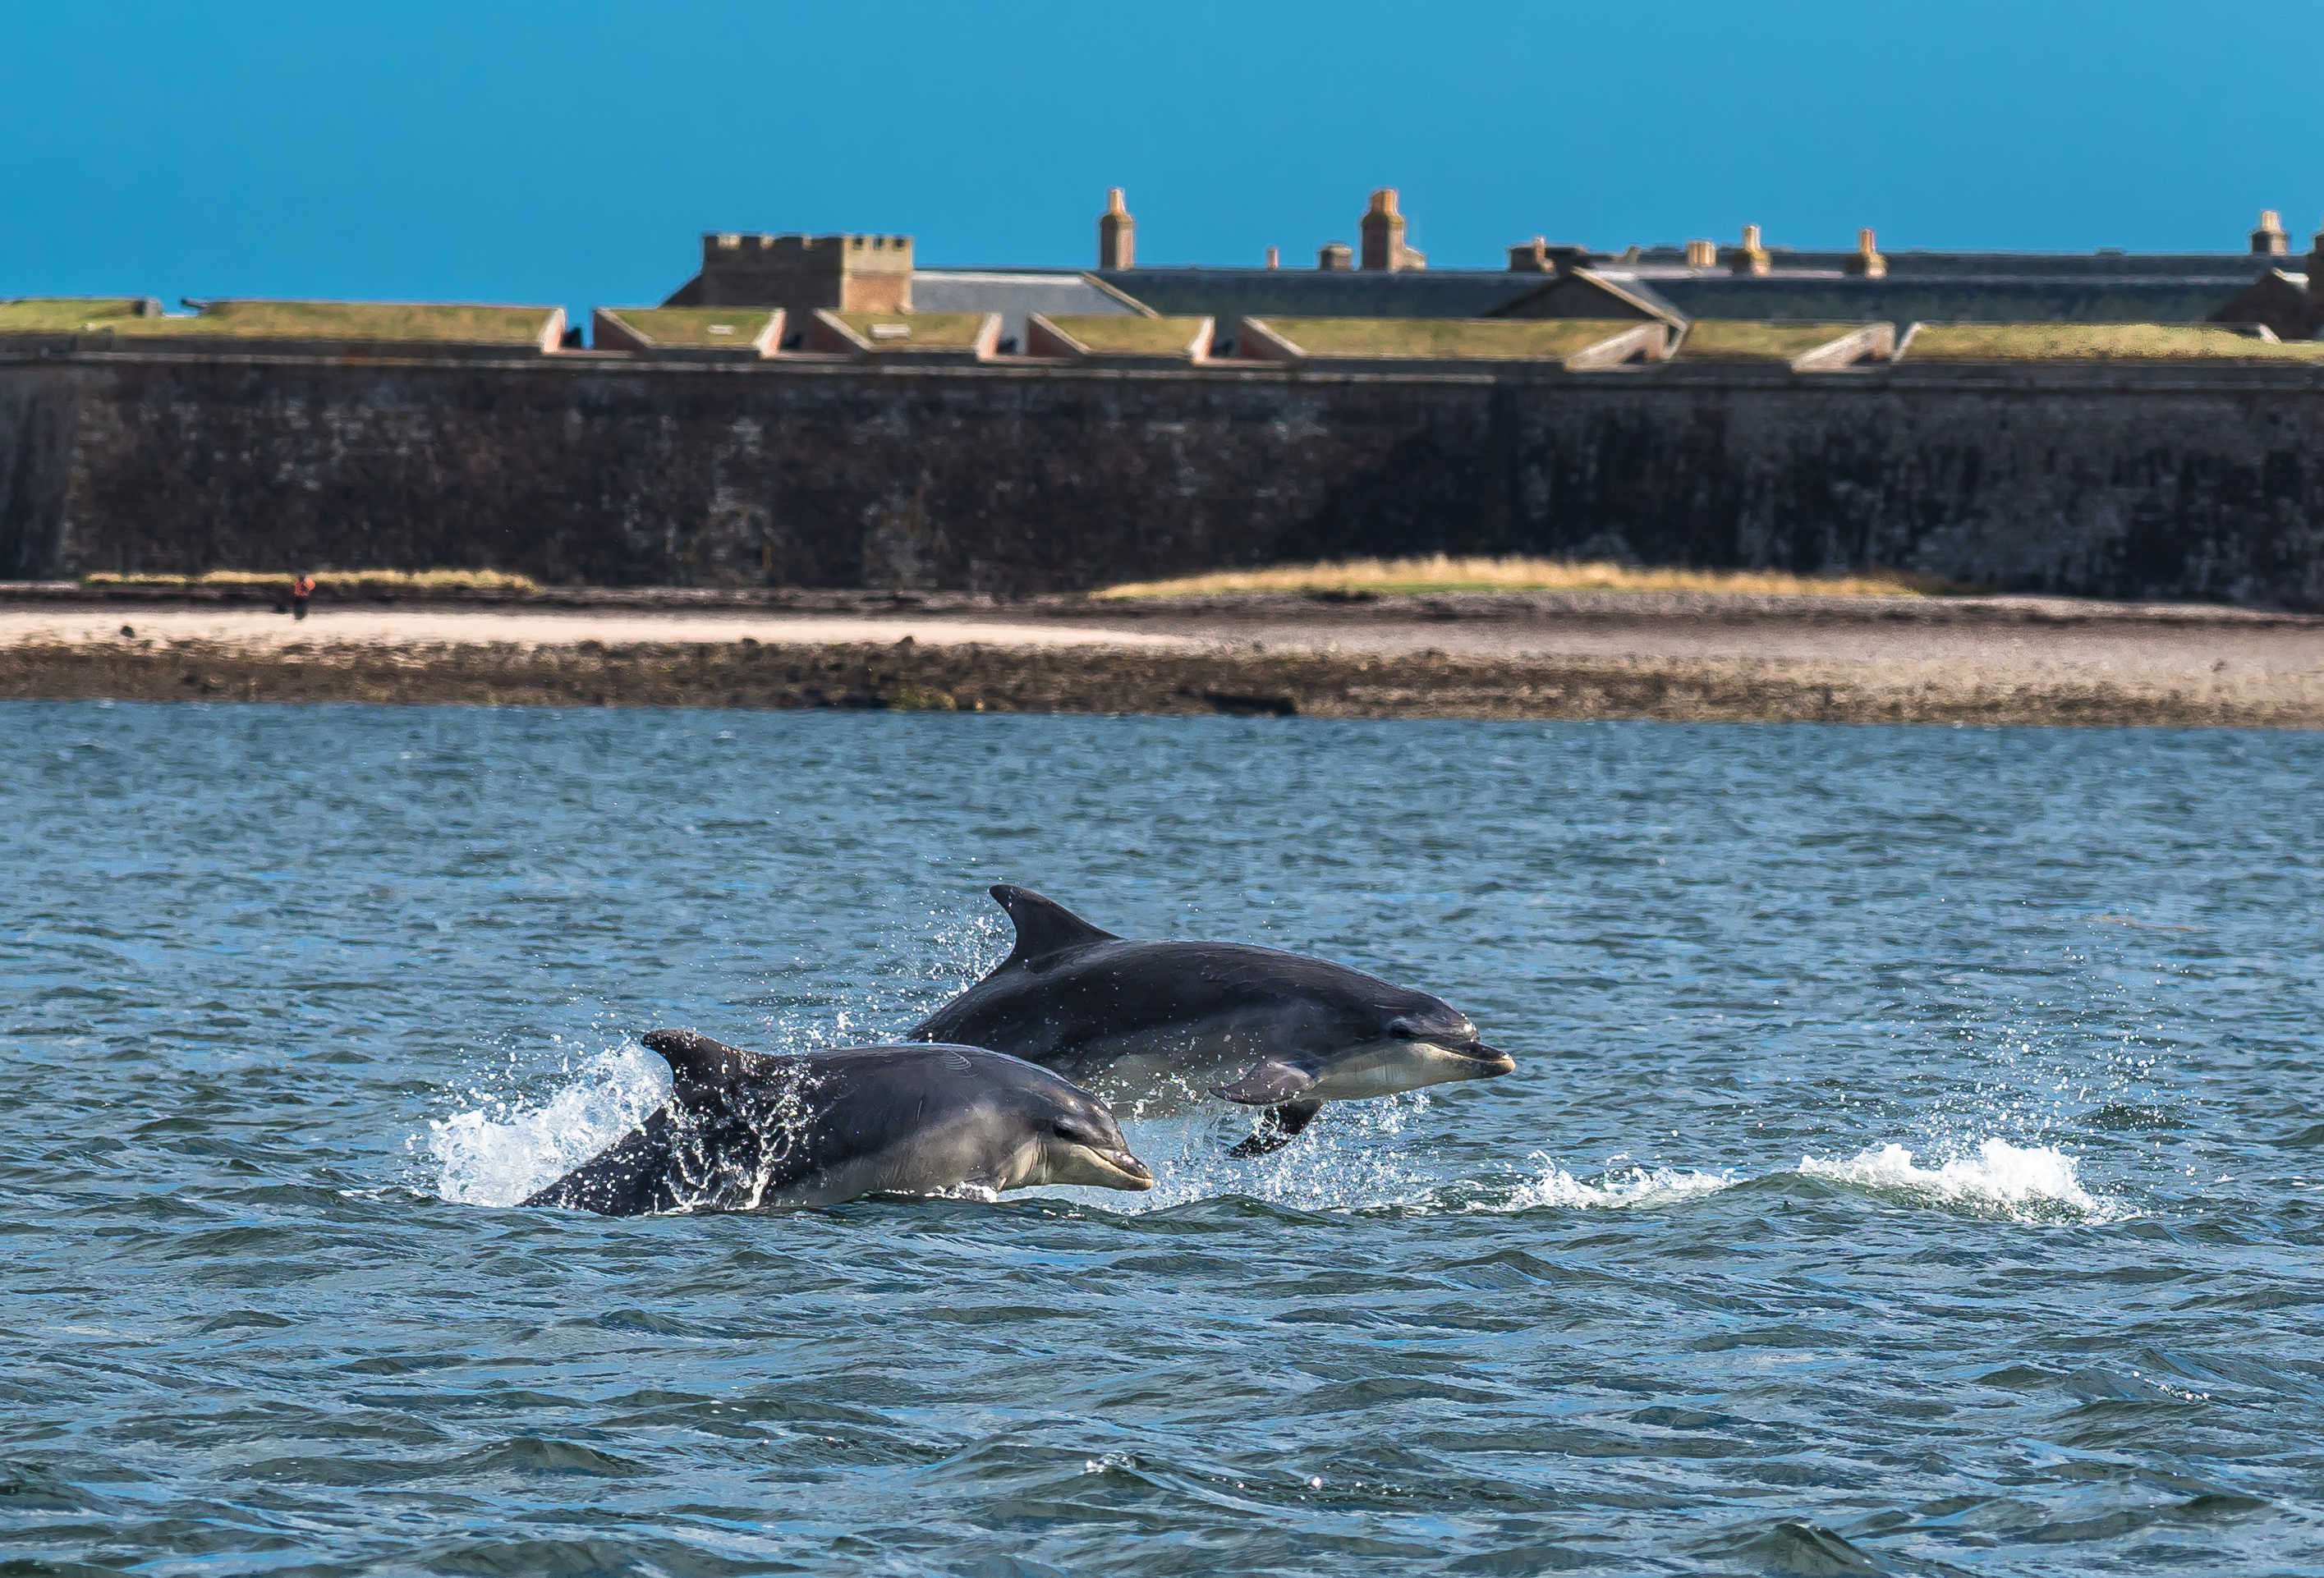 Dauphins observés dans la mer près d'Inverness en Ecosse